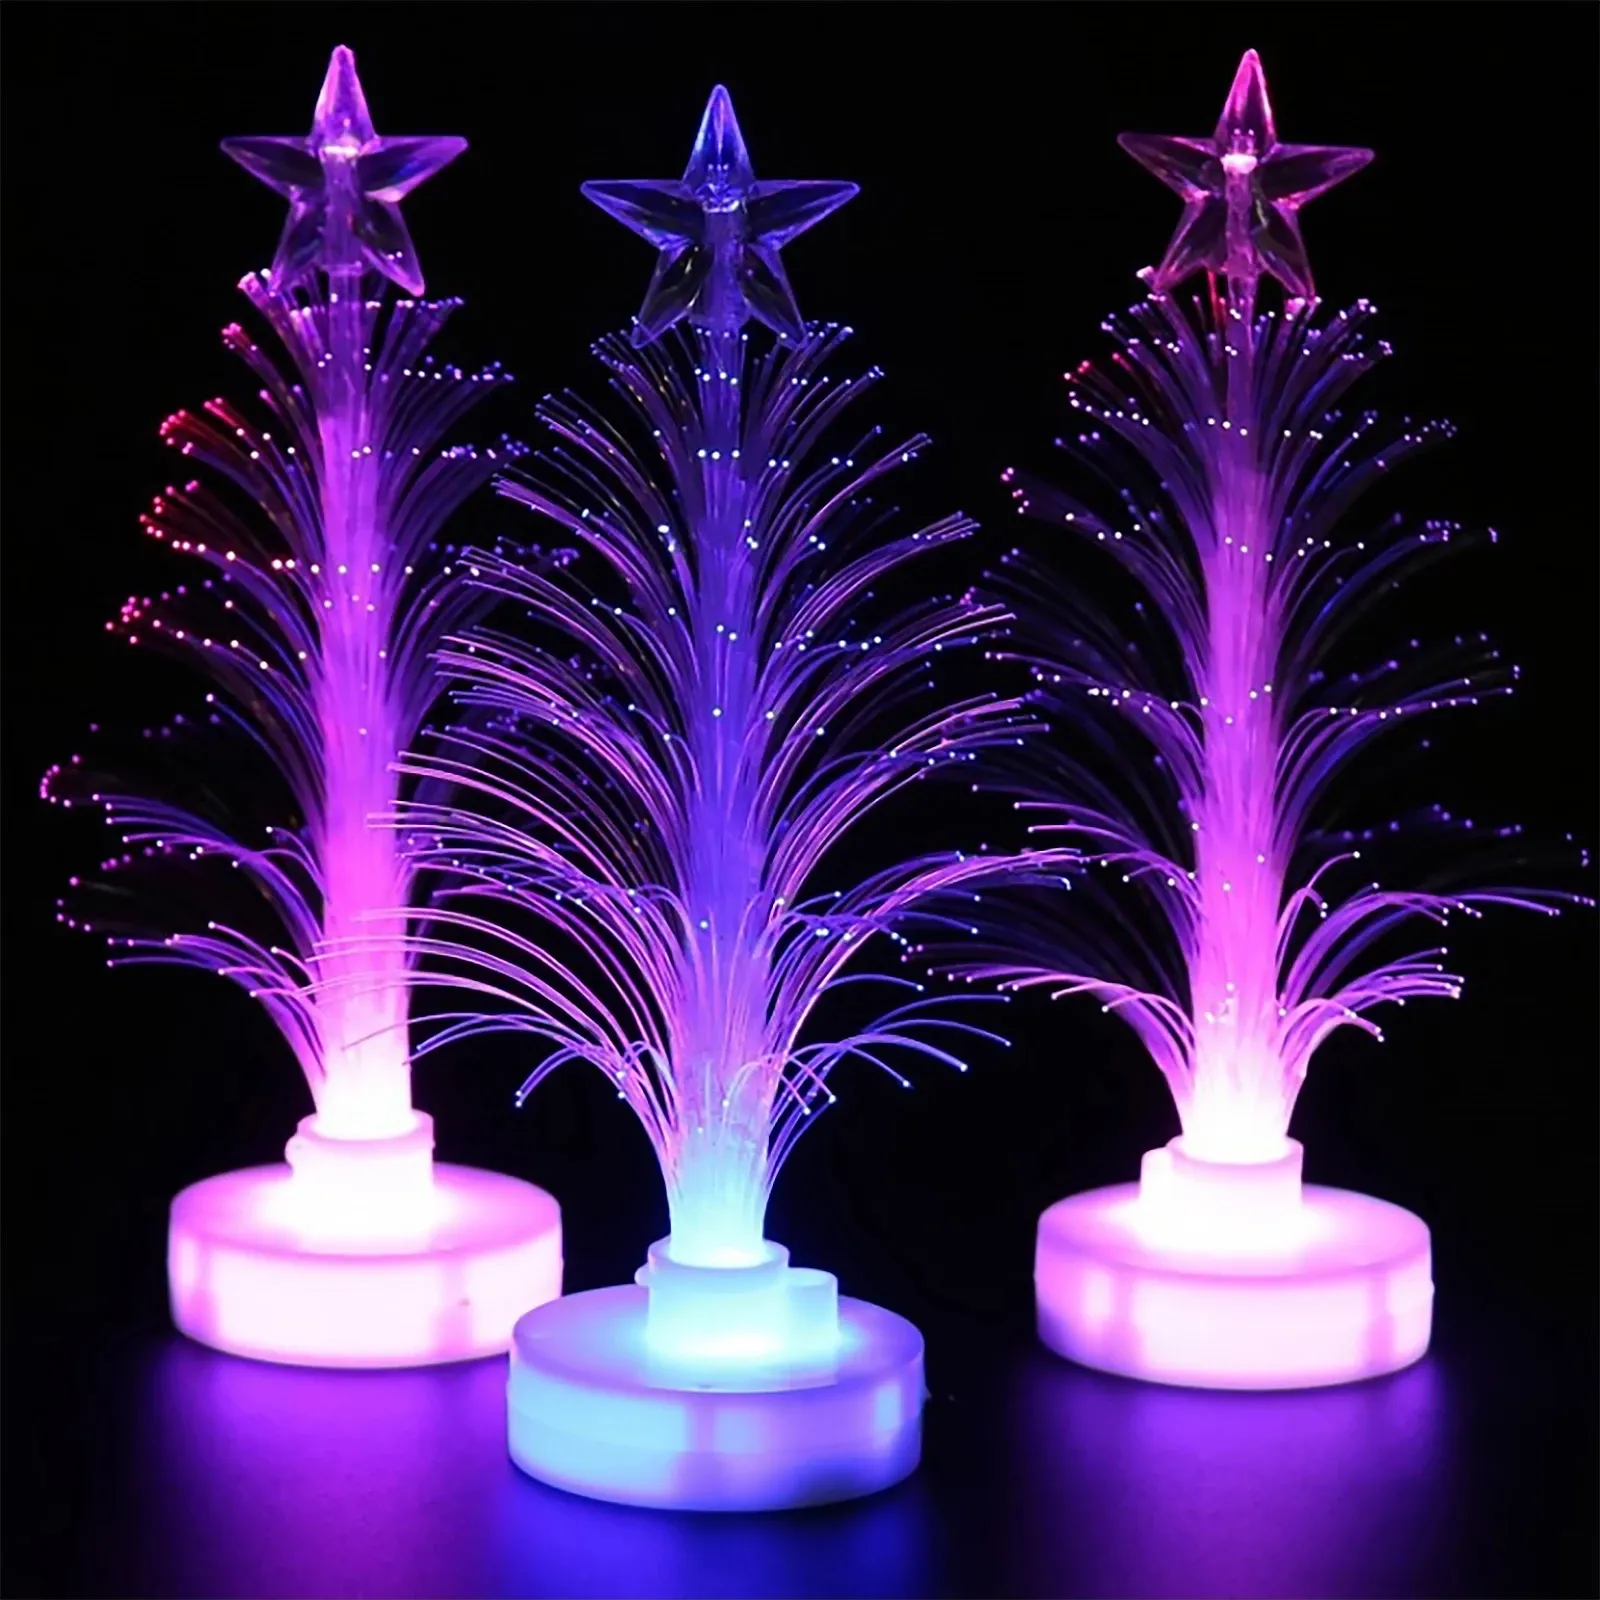 Kerstboom Netting Led Flash Glasvezel Lamp Usb Power Kleur Decoratie Nachtlampje Met Ster Top Voor Kerstcadeaus